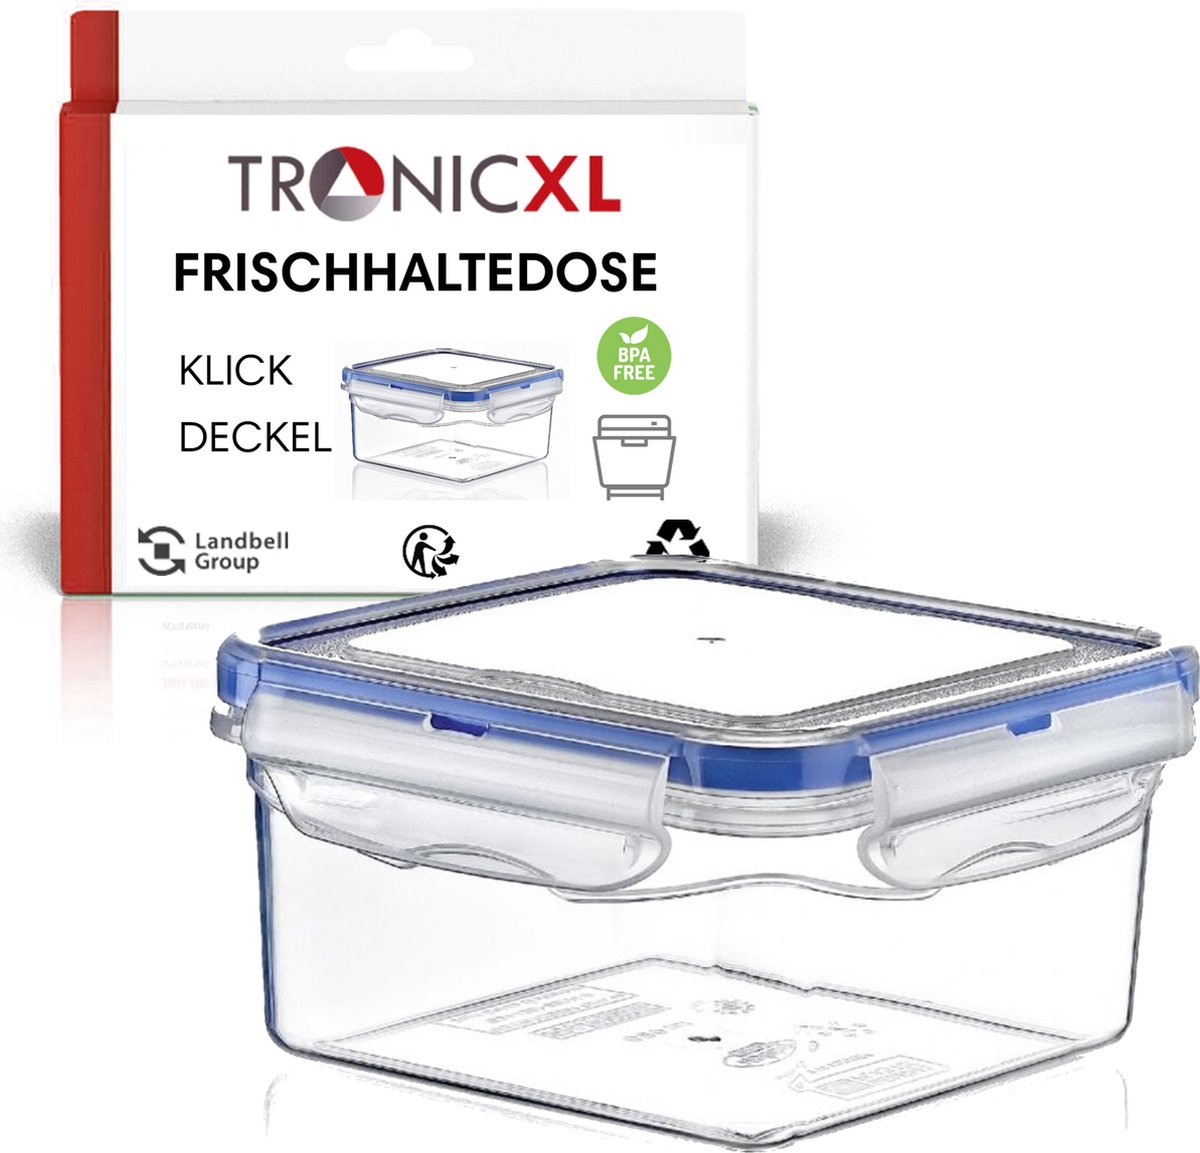 TronicXL 300ml vershouddoos - voorraaddozen met deksel - bewaardoos met kliksluiting luchtdicht opbergdoos box container keuken vaatwasser bestendig